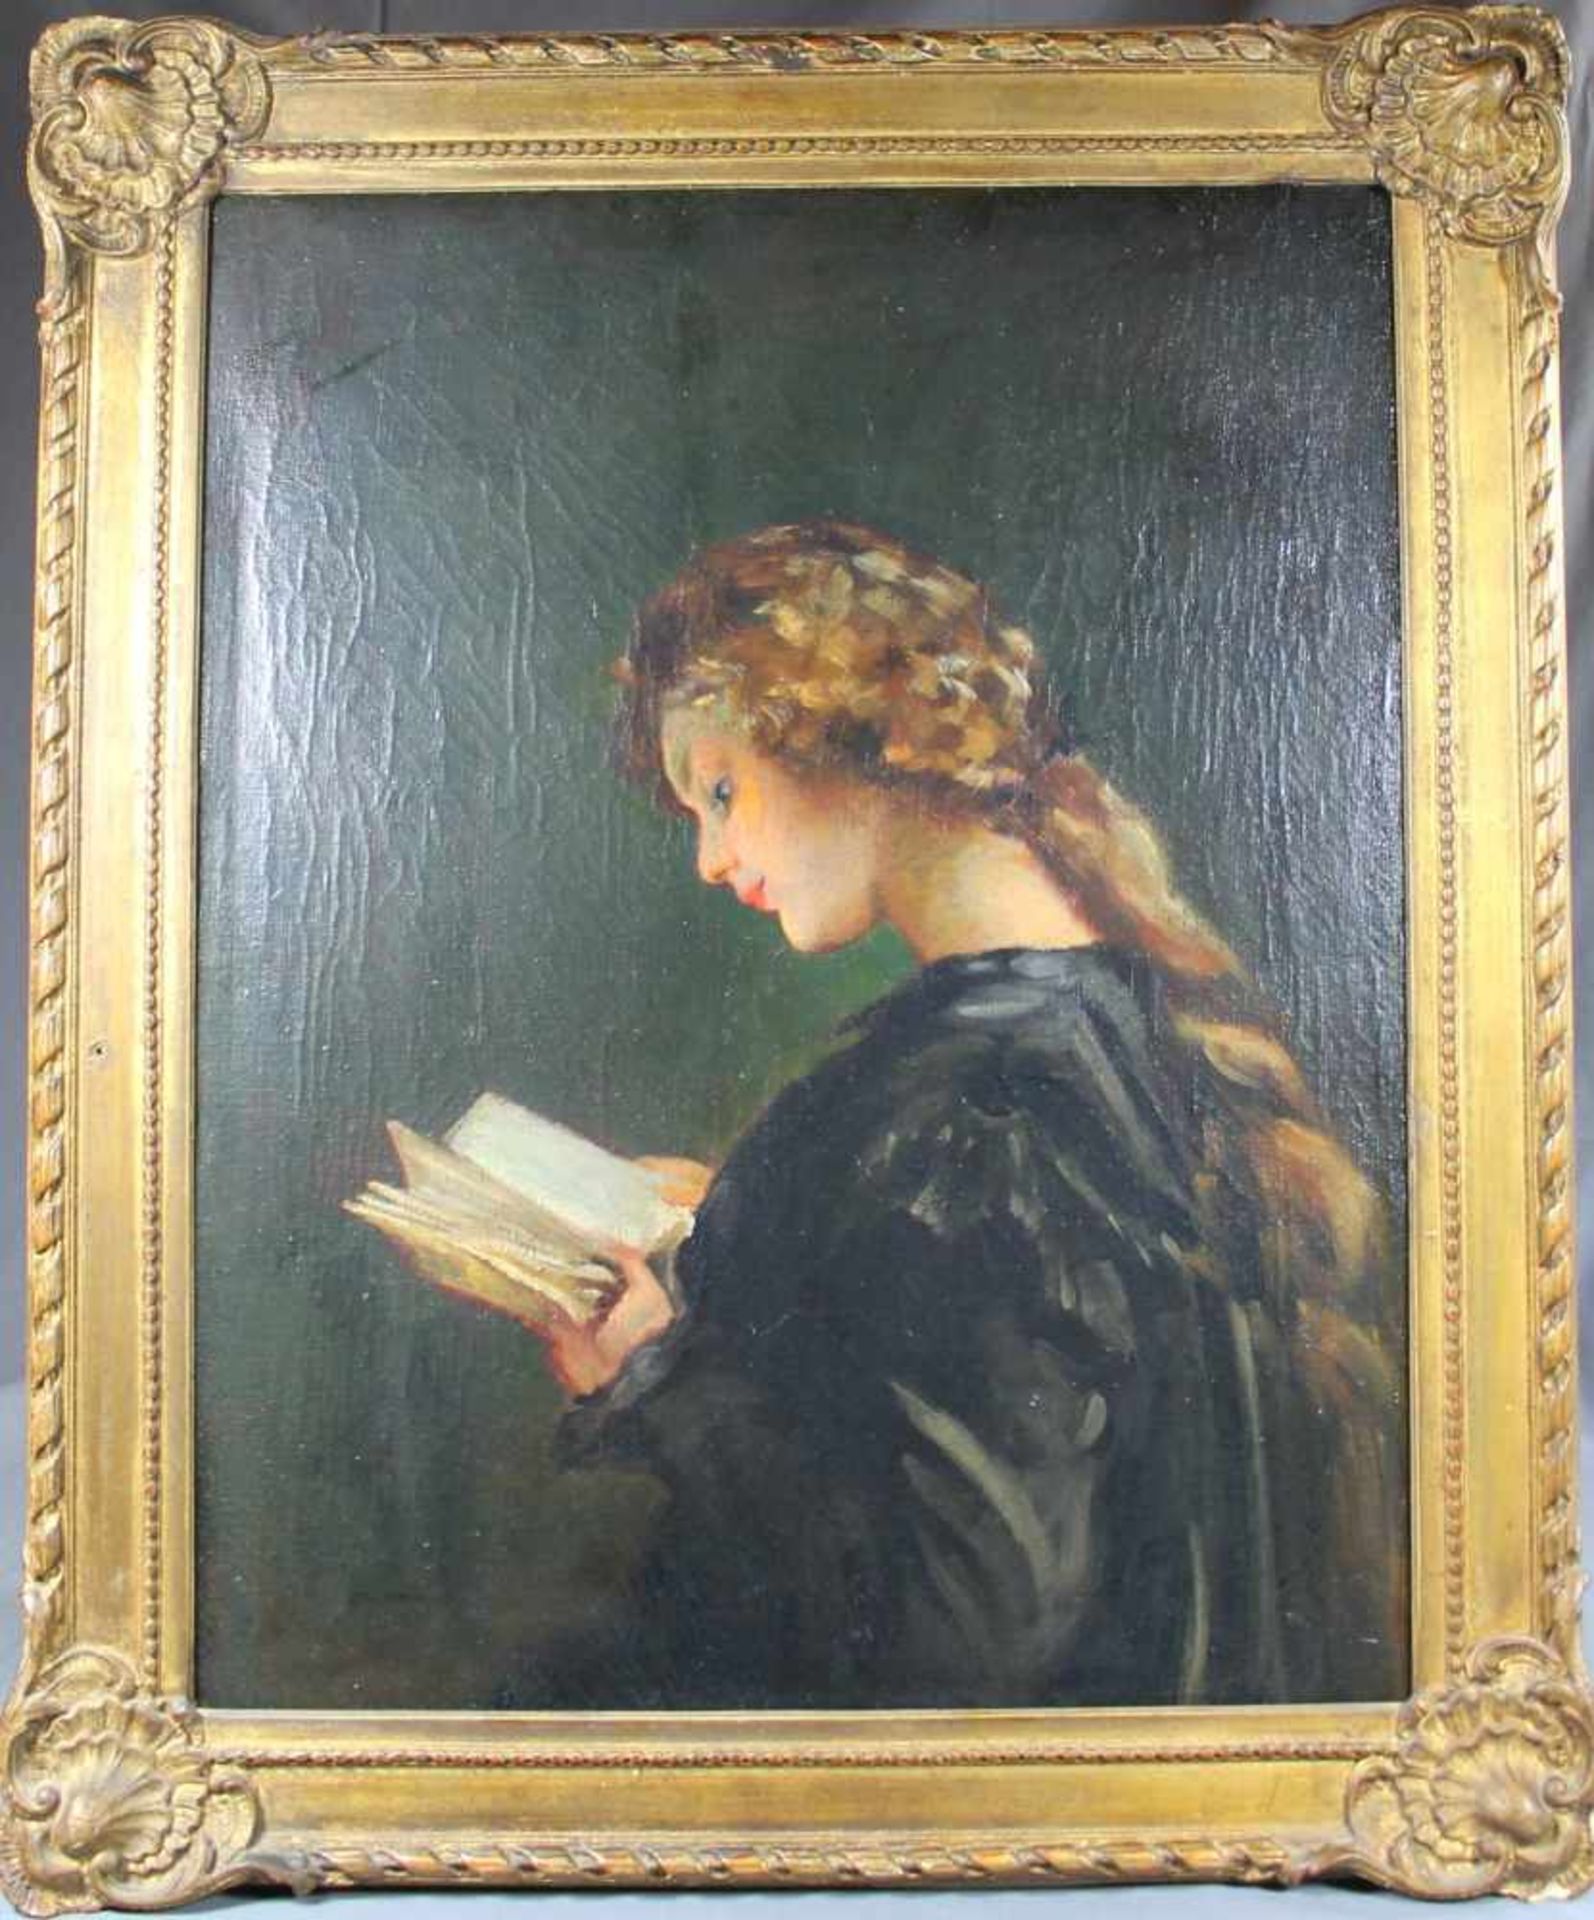 1 altes Ölbild auf Leinwand "lesendes Mädchen", keine Signatur erkennbar, ca. 58cm x 45cm (